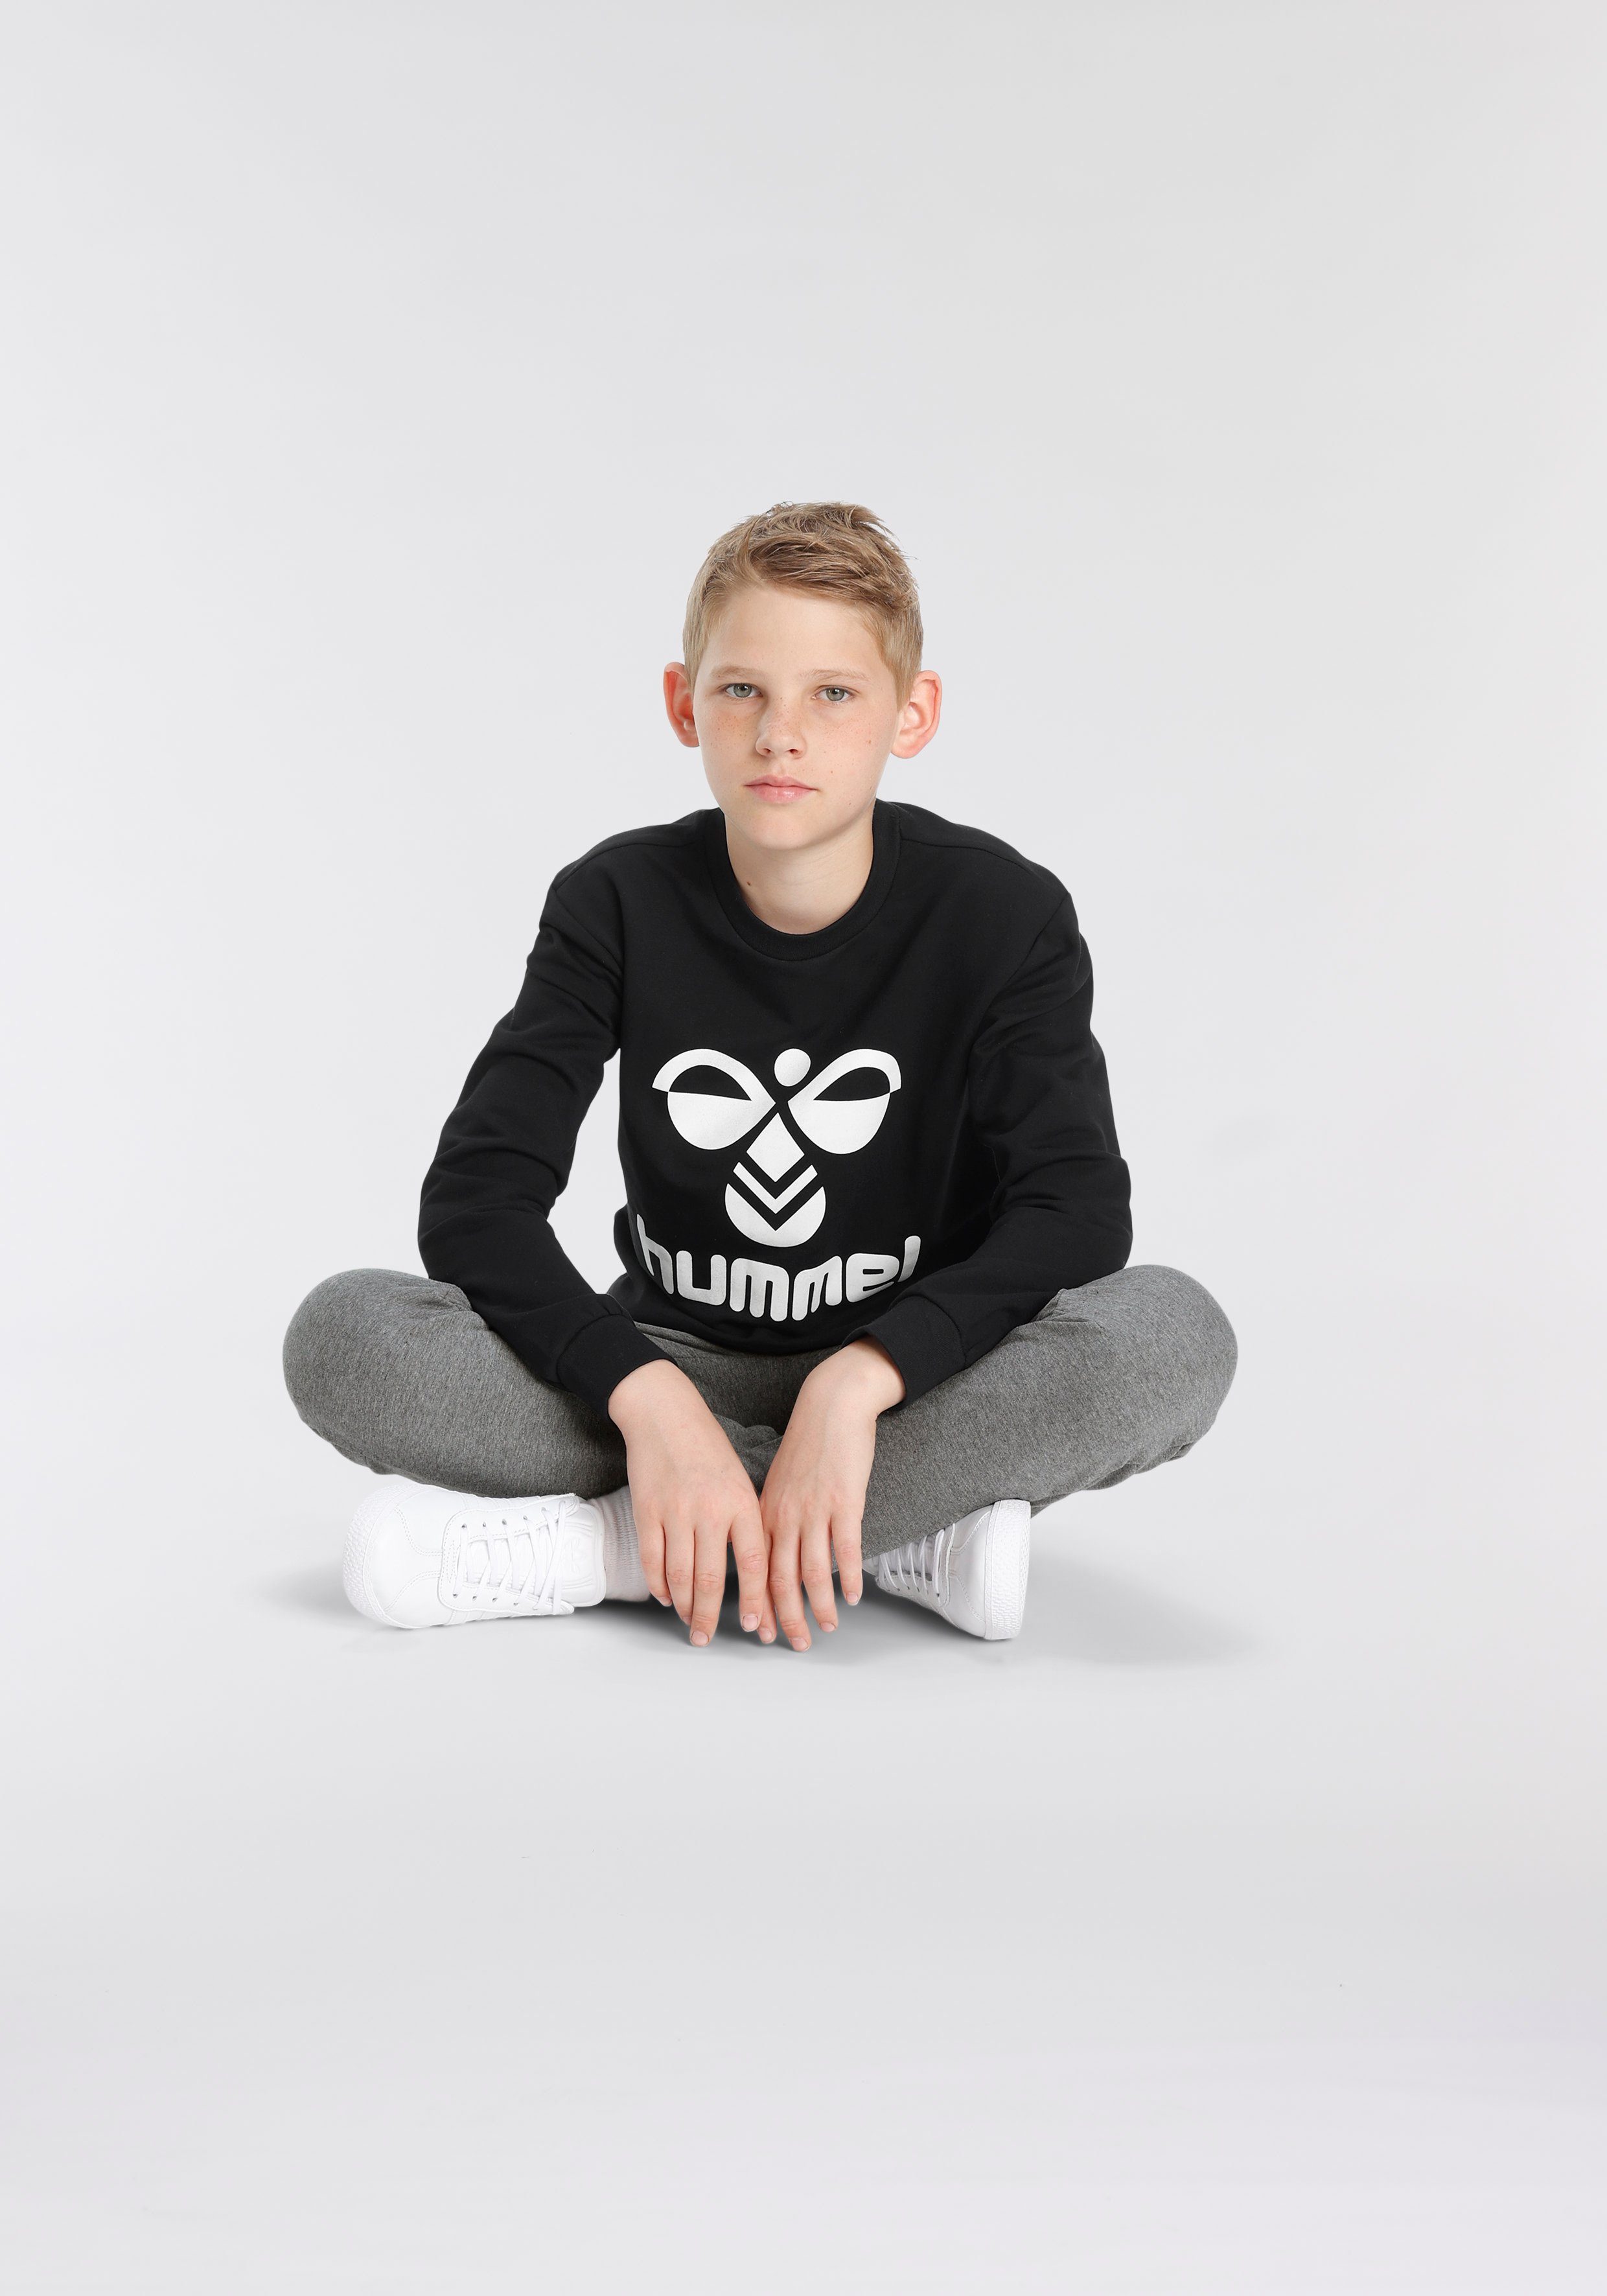 Sweatshirt für SWEATSHIRT hummel DOS schwarz - Kinder